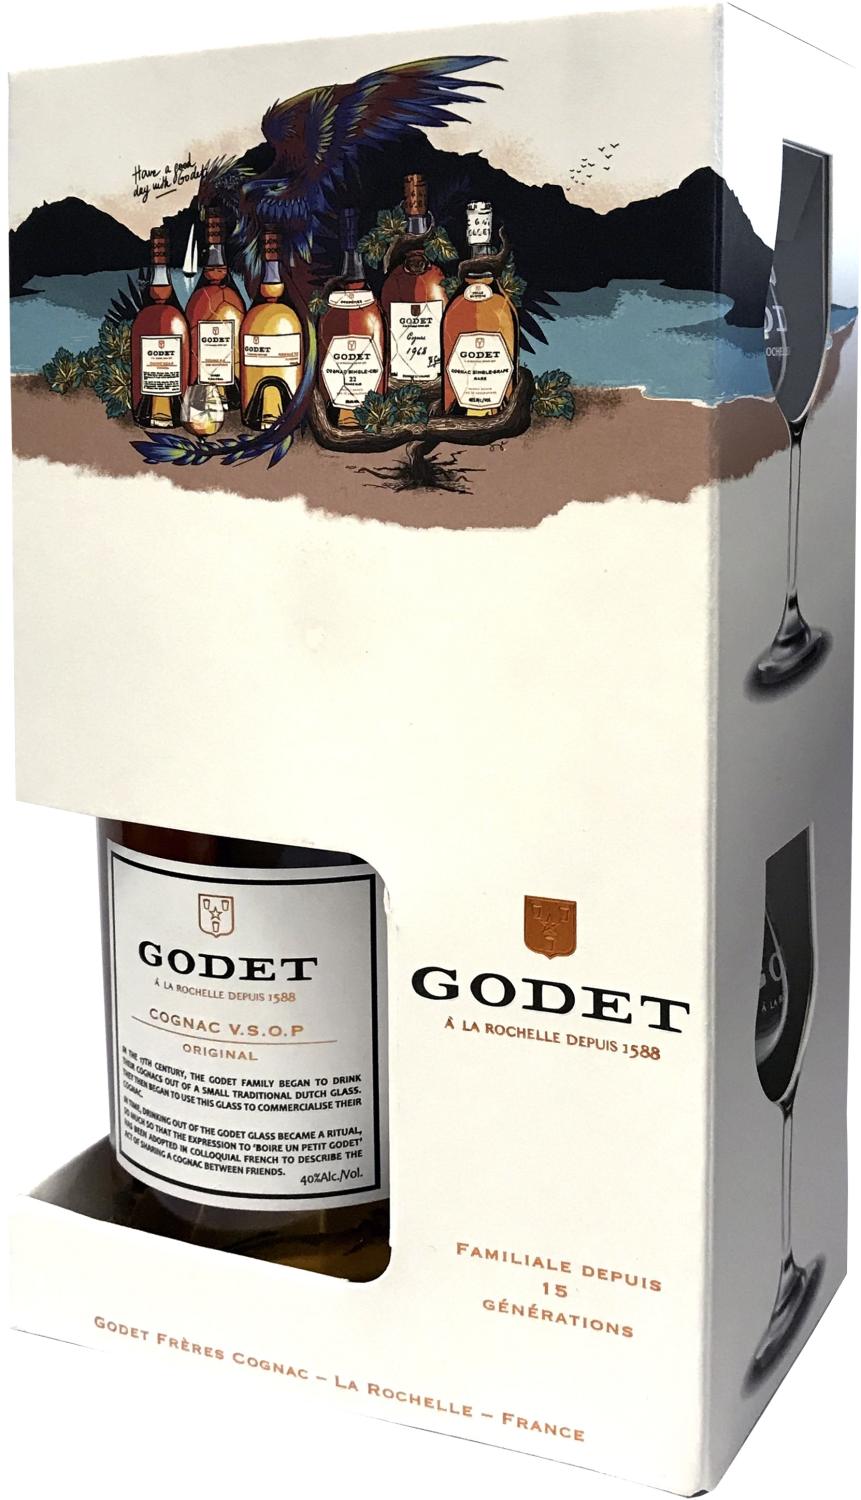 Godet Original Cognac VSOP (gift box with 2 glasses) hennessy cognac vs gift box with 2 glasses